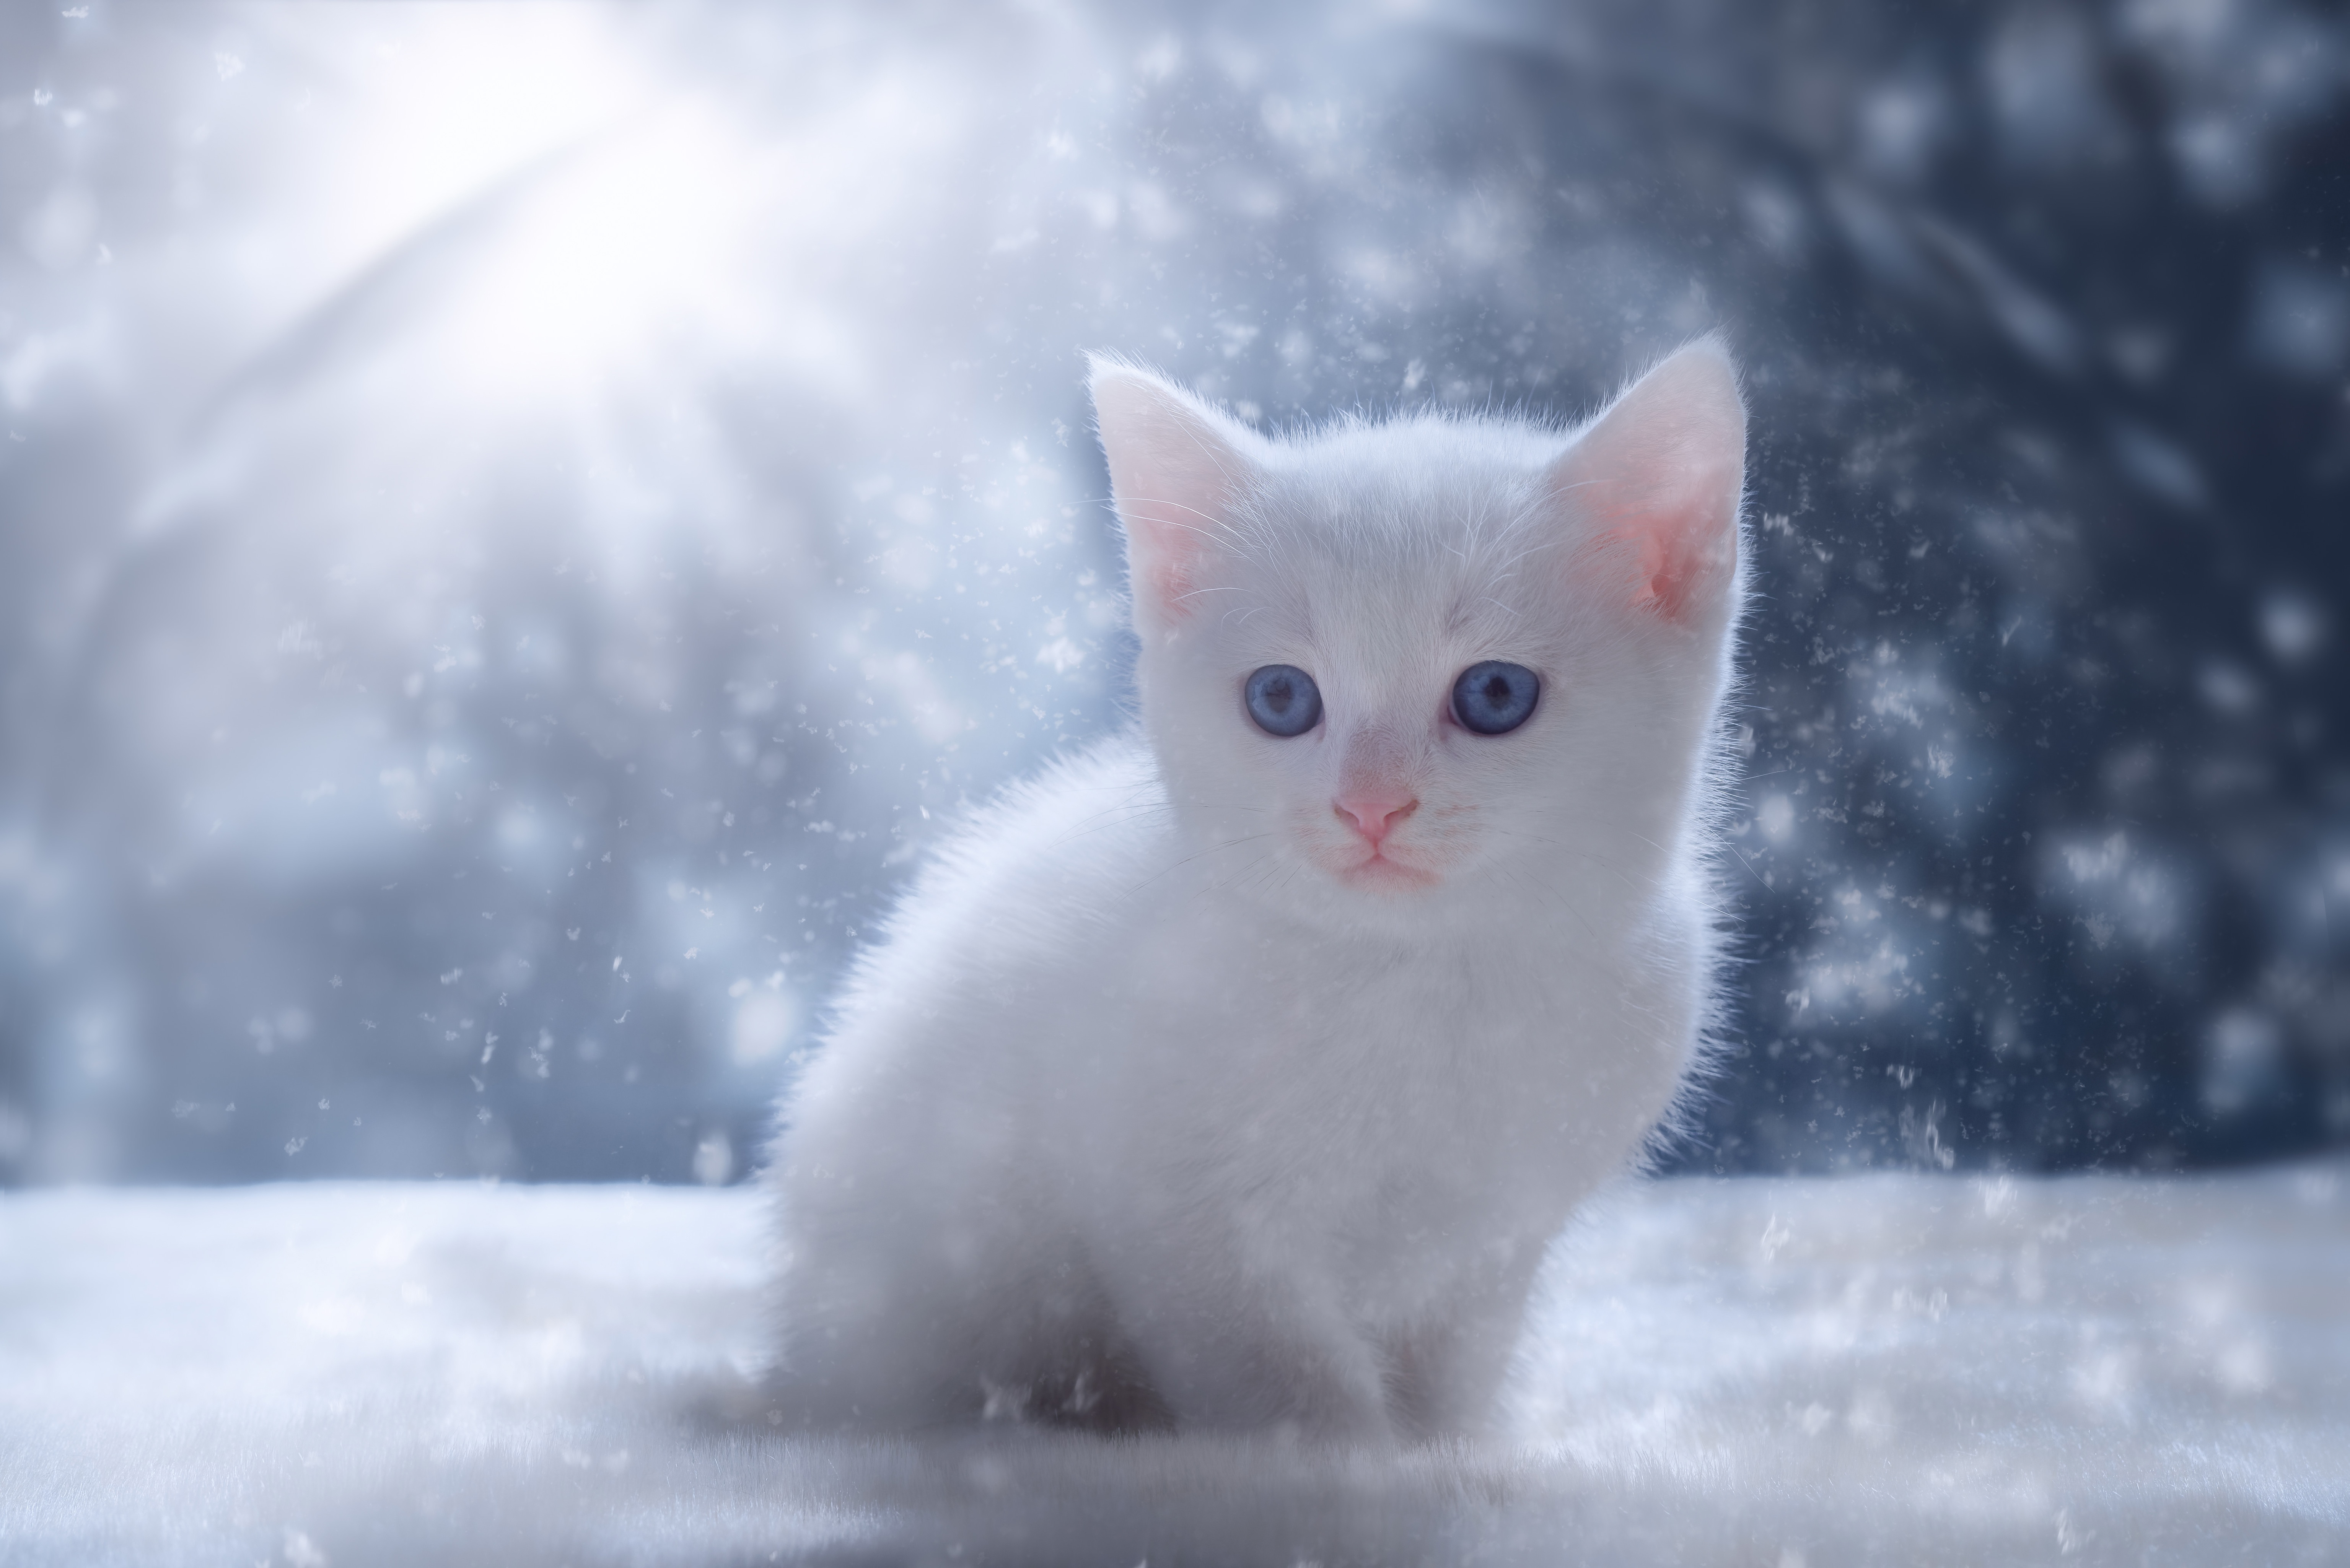 Снежки белые пушистые. Котенок в снегу. Кот снежок. Пушистый снег. Снежный кот.